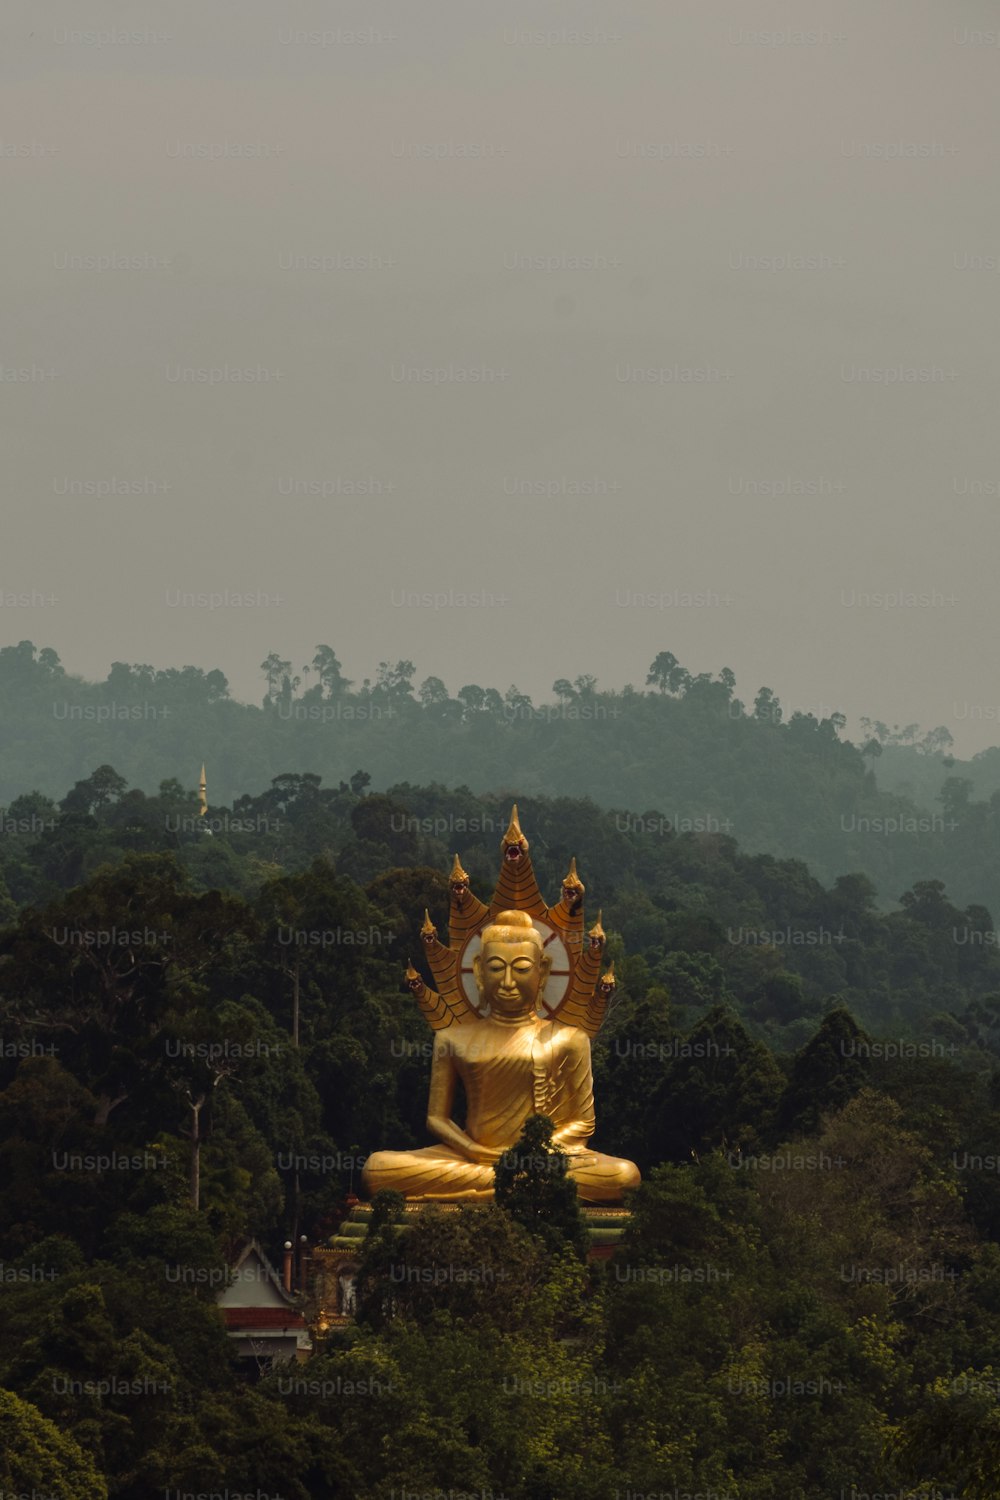 Una grande statua dorata di Buddha seduta in cima a una lussureggiante foresta verde